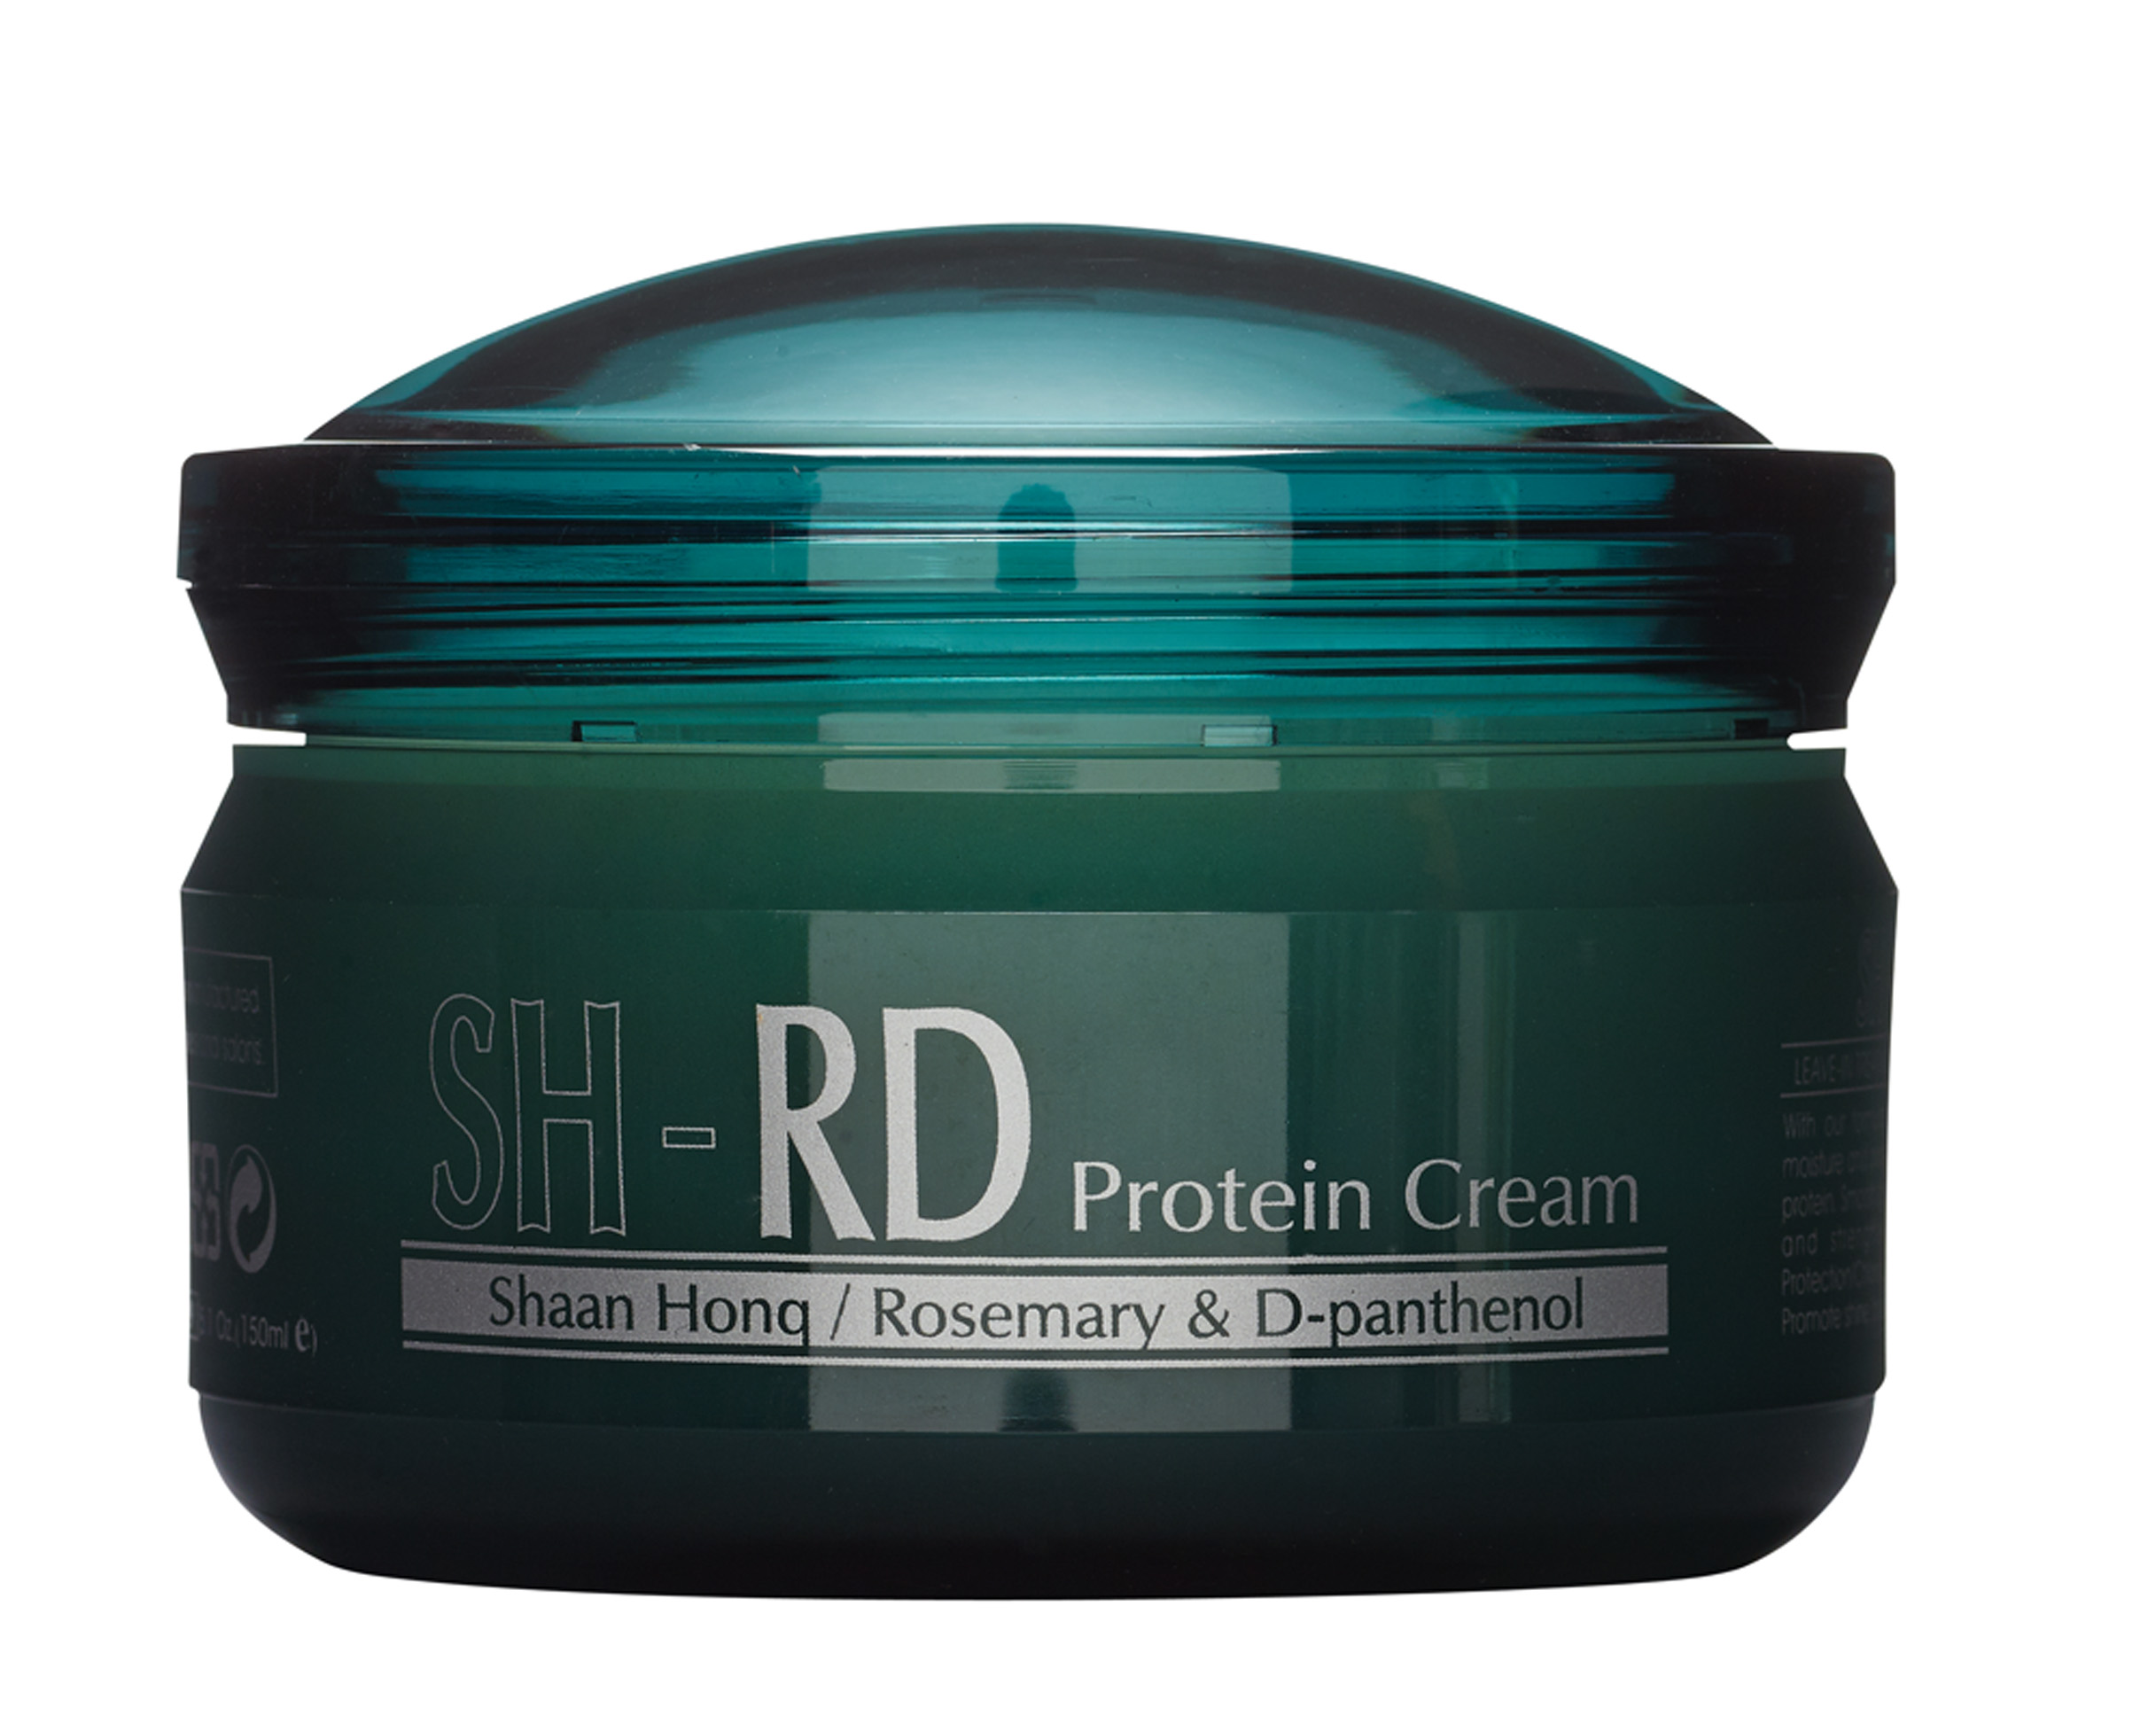 No tom “Toda loira deveria usar SH-RD, um creme de proteína que restaura o cabelo. A cor fica mais bonita, e o fio, hidratado”